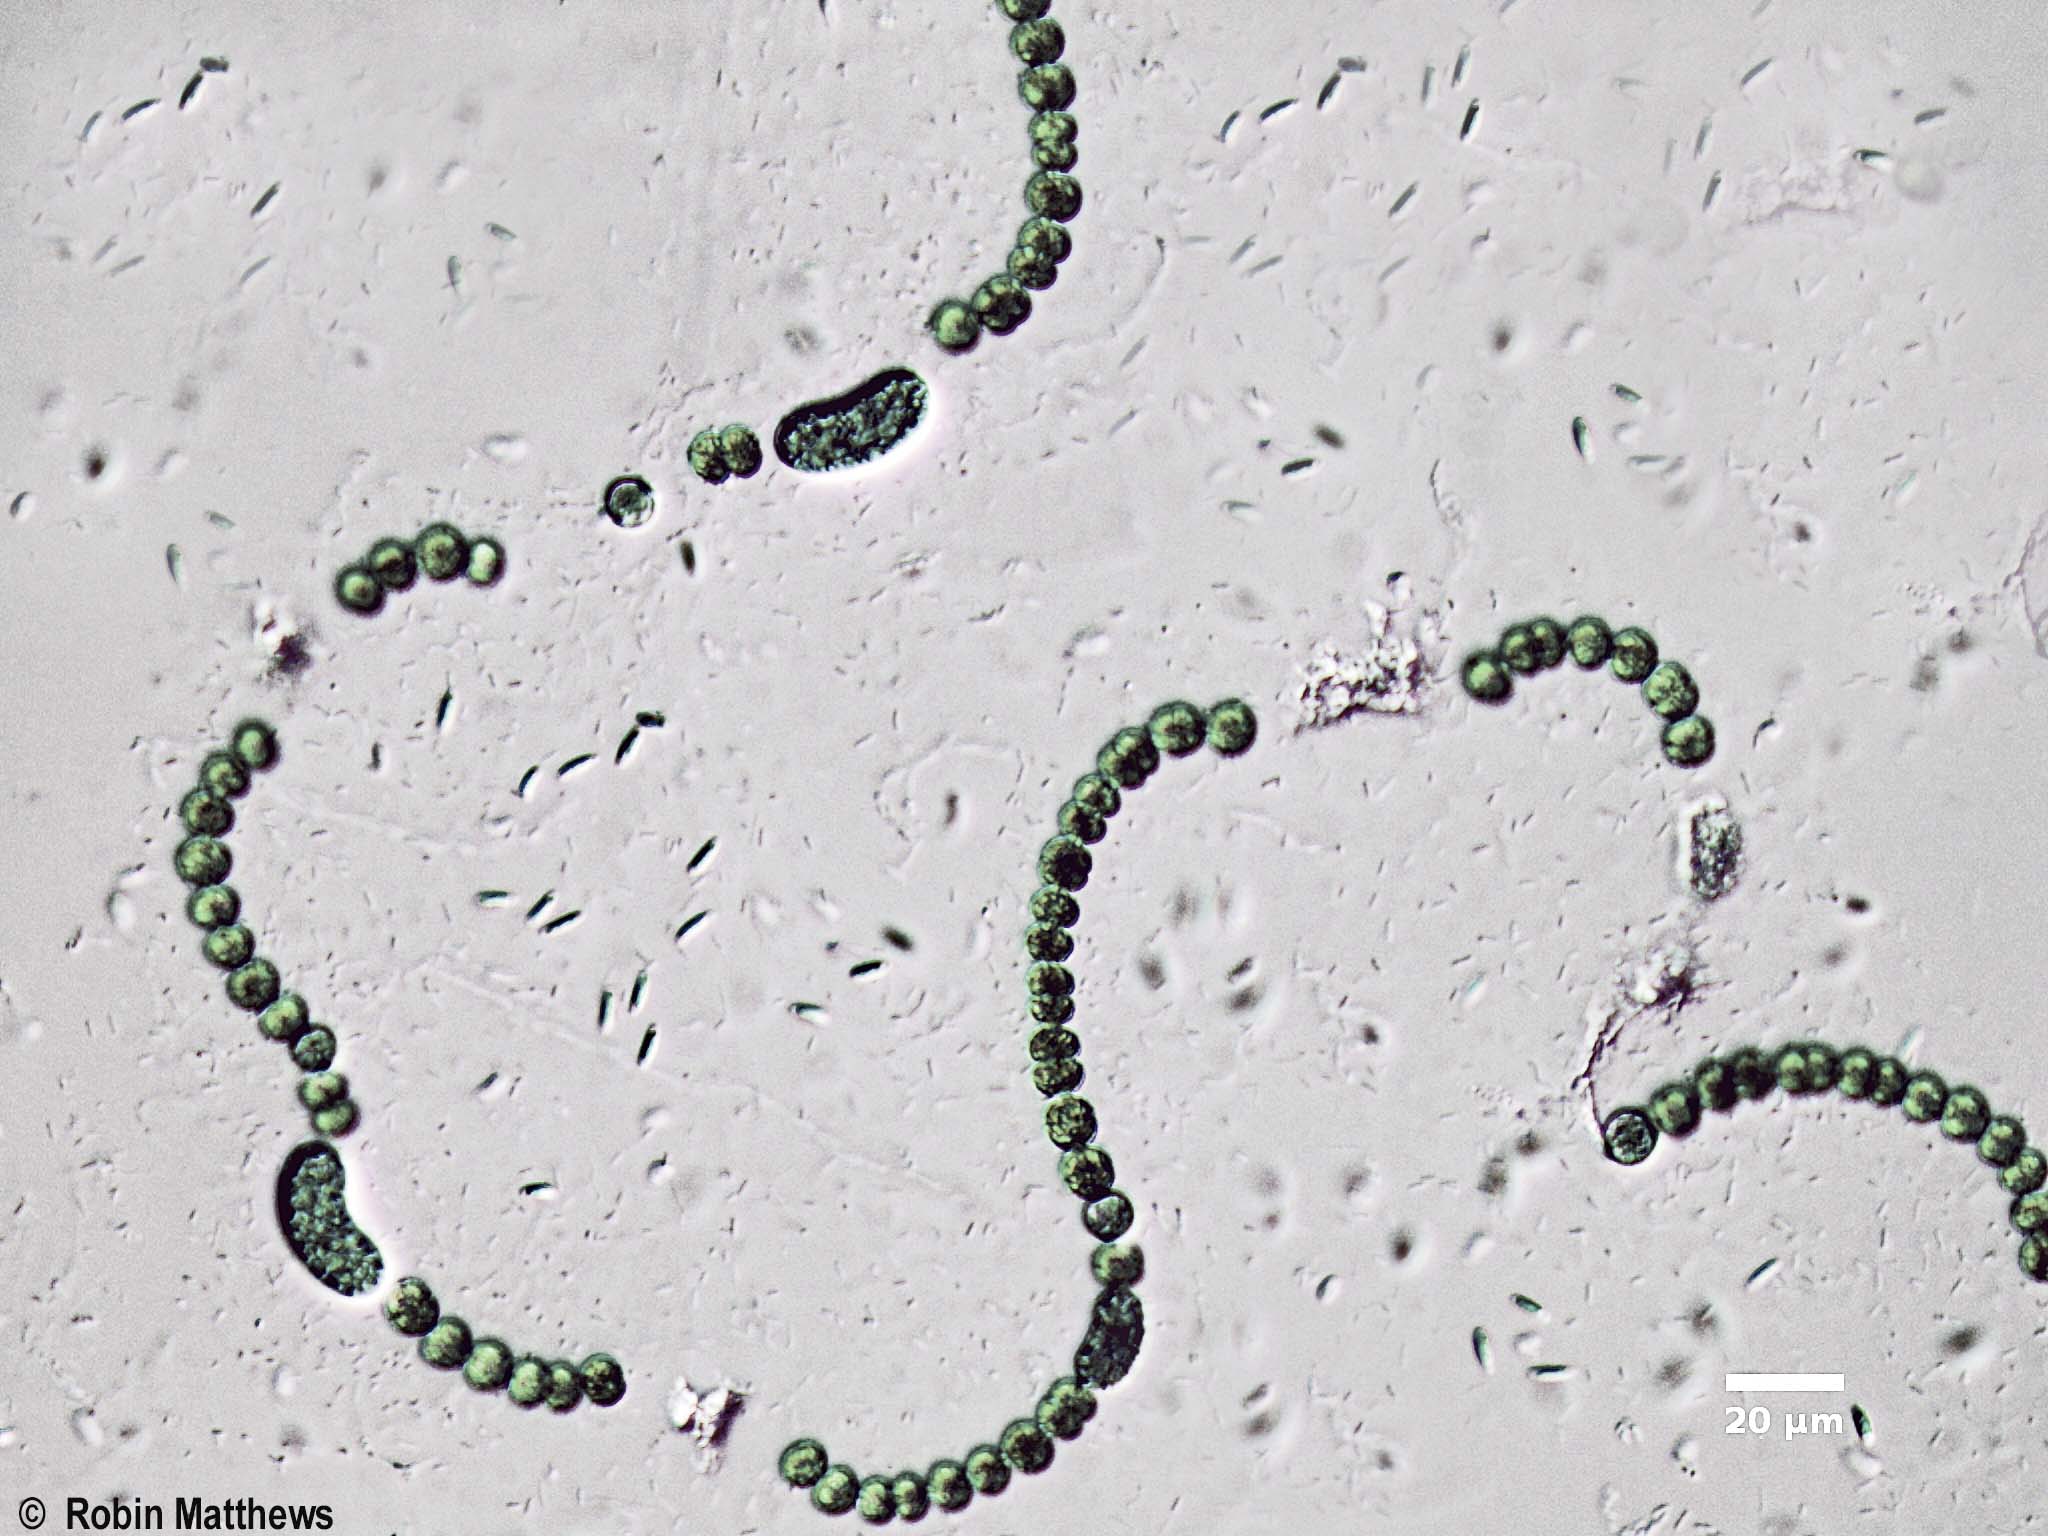 Cyanobacteria/Nostocales/Aphanizomenonaceae/Dolichospermum/flos-aquae/dolichospermum-568.jpg